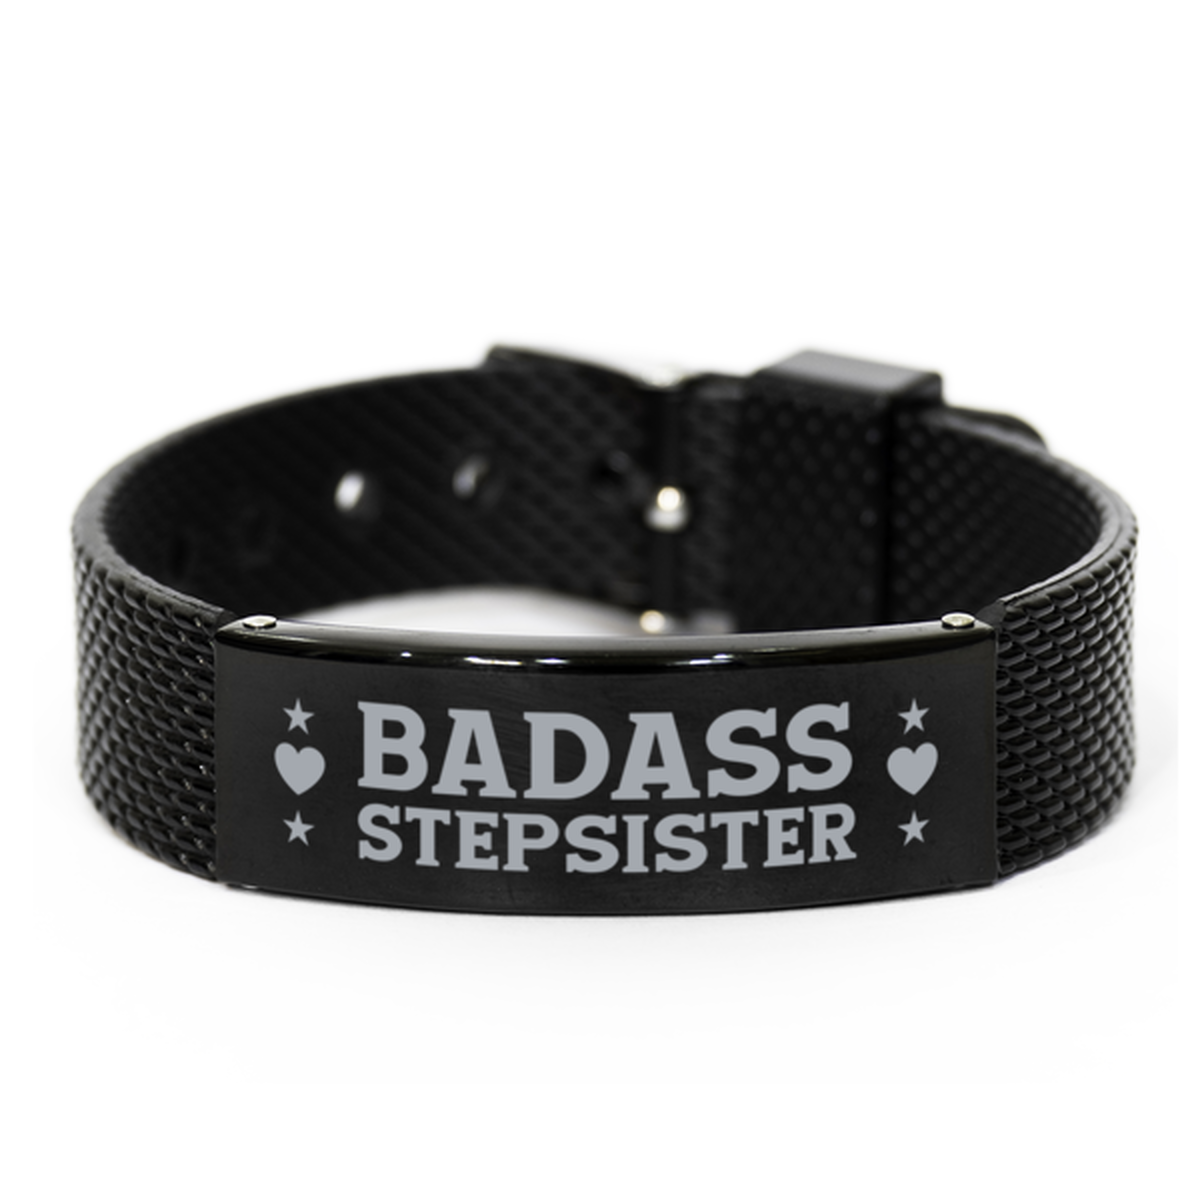 Stepsister Black Shark Mesh Bracelet, Badass Stepsister, Funny Family Gifts For Stepsister From Brother Sister